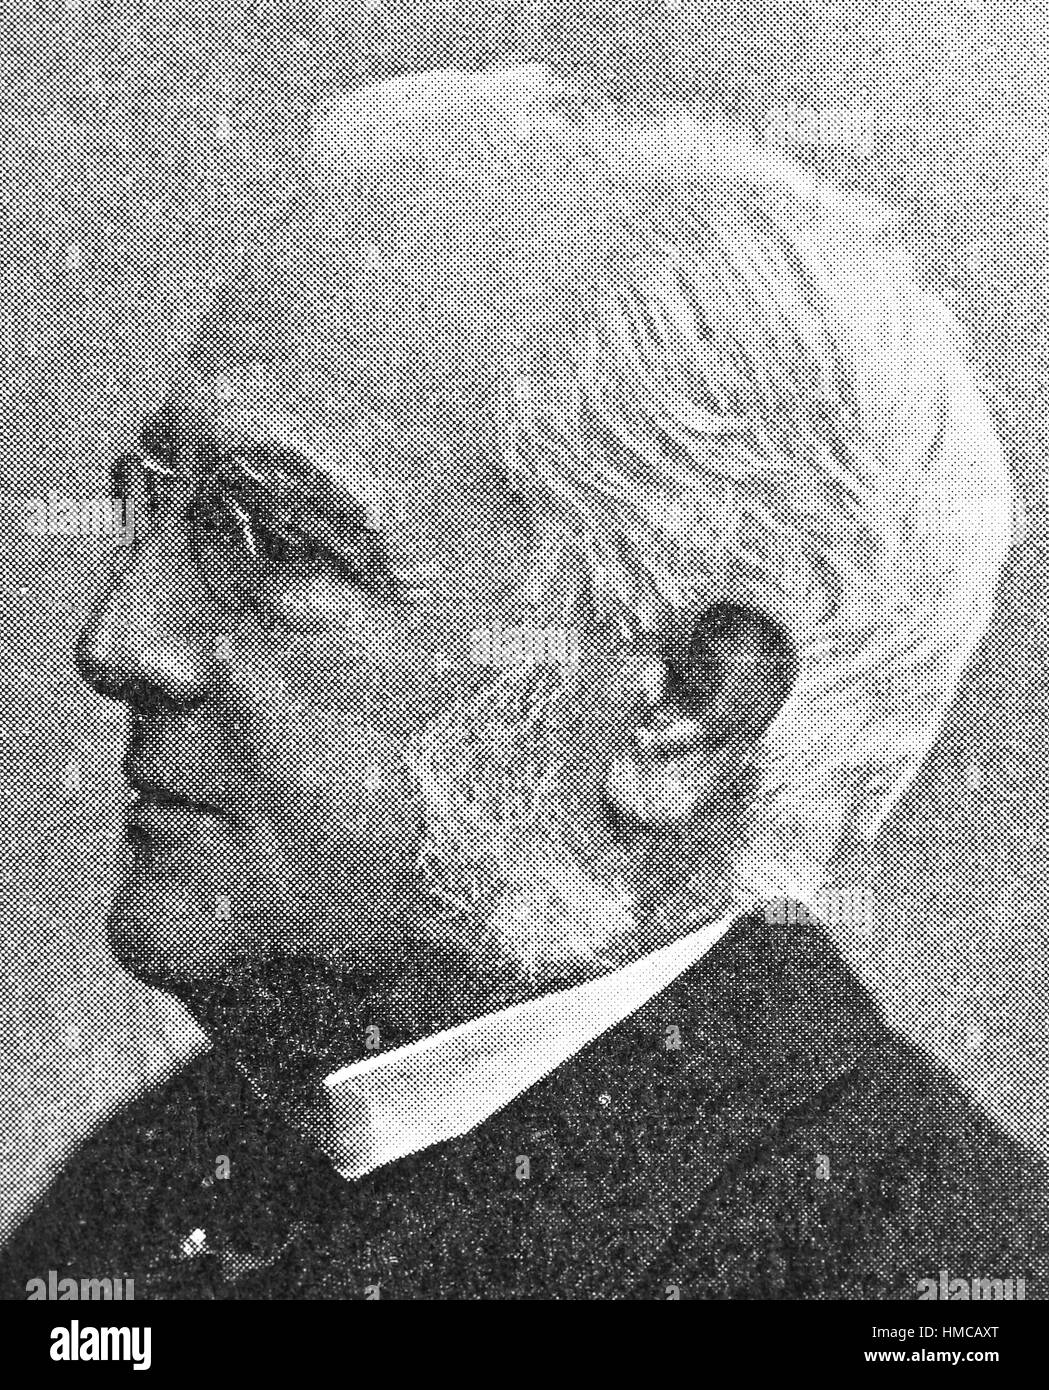 Friedrich Max Mueller, 6 Dicembre 1823 - 28 ottobre 1900, generalmente noto come Max Mueller, era un tedesco-nato filologo e lorientalista, foto o illustrazione, pubblicato nel 1892, digitale migliorata Foto Stock